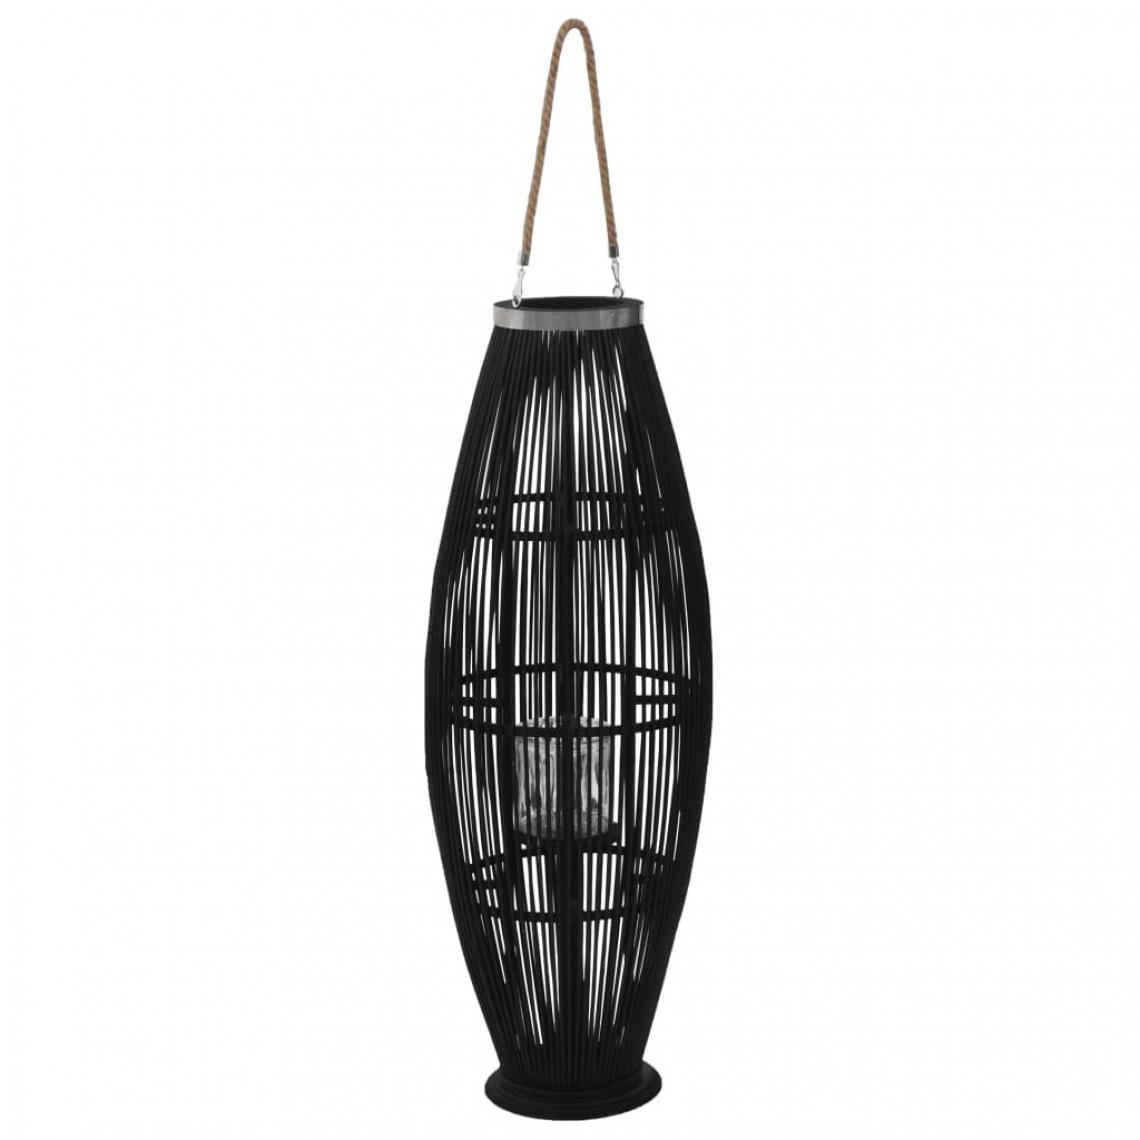 Decoshop26 - Bougeoir suspendu ou sur pied porte-bougie bambou naturel décoration extérieur Noir hauteur 95 cm DEC020006 - Bougeoirs, chandeliers